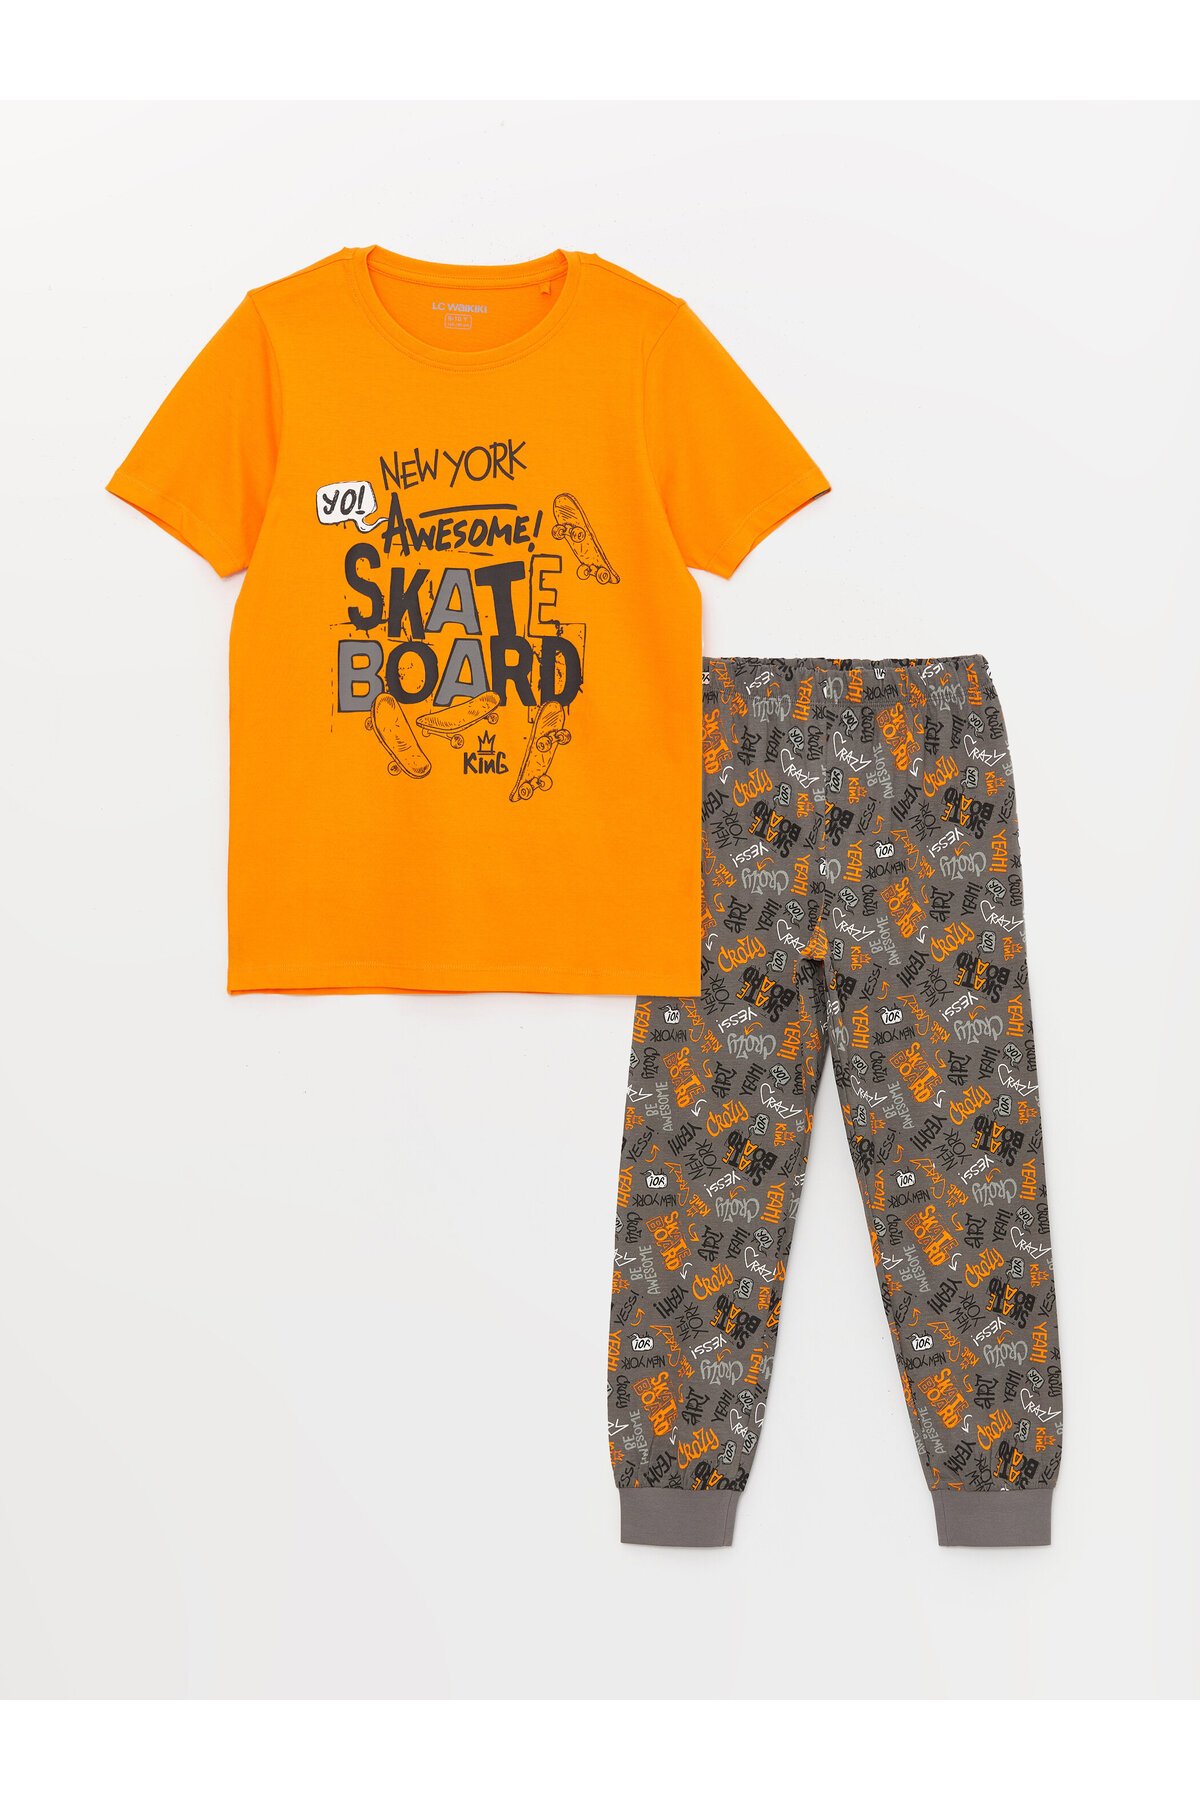 LC Waikiki Crew Neck Printed Short Sleeve Boys Pajamas Set